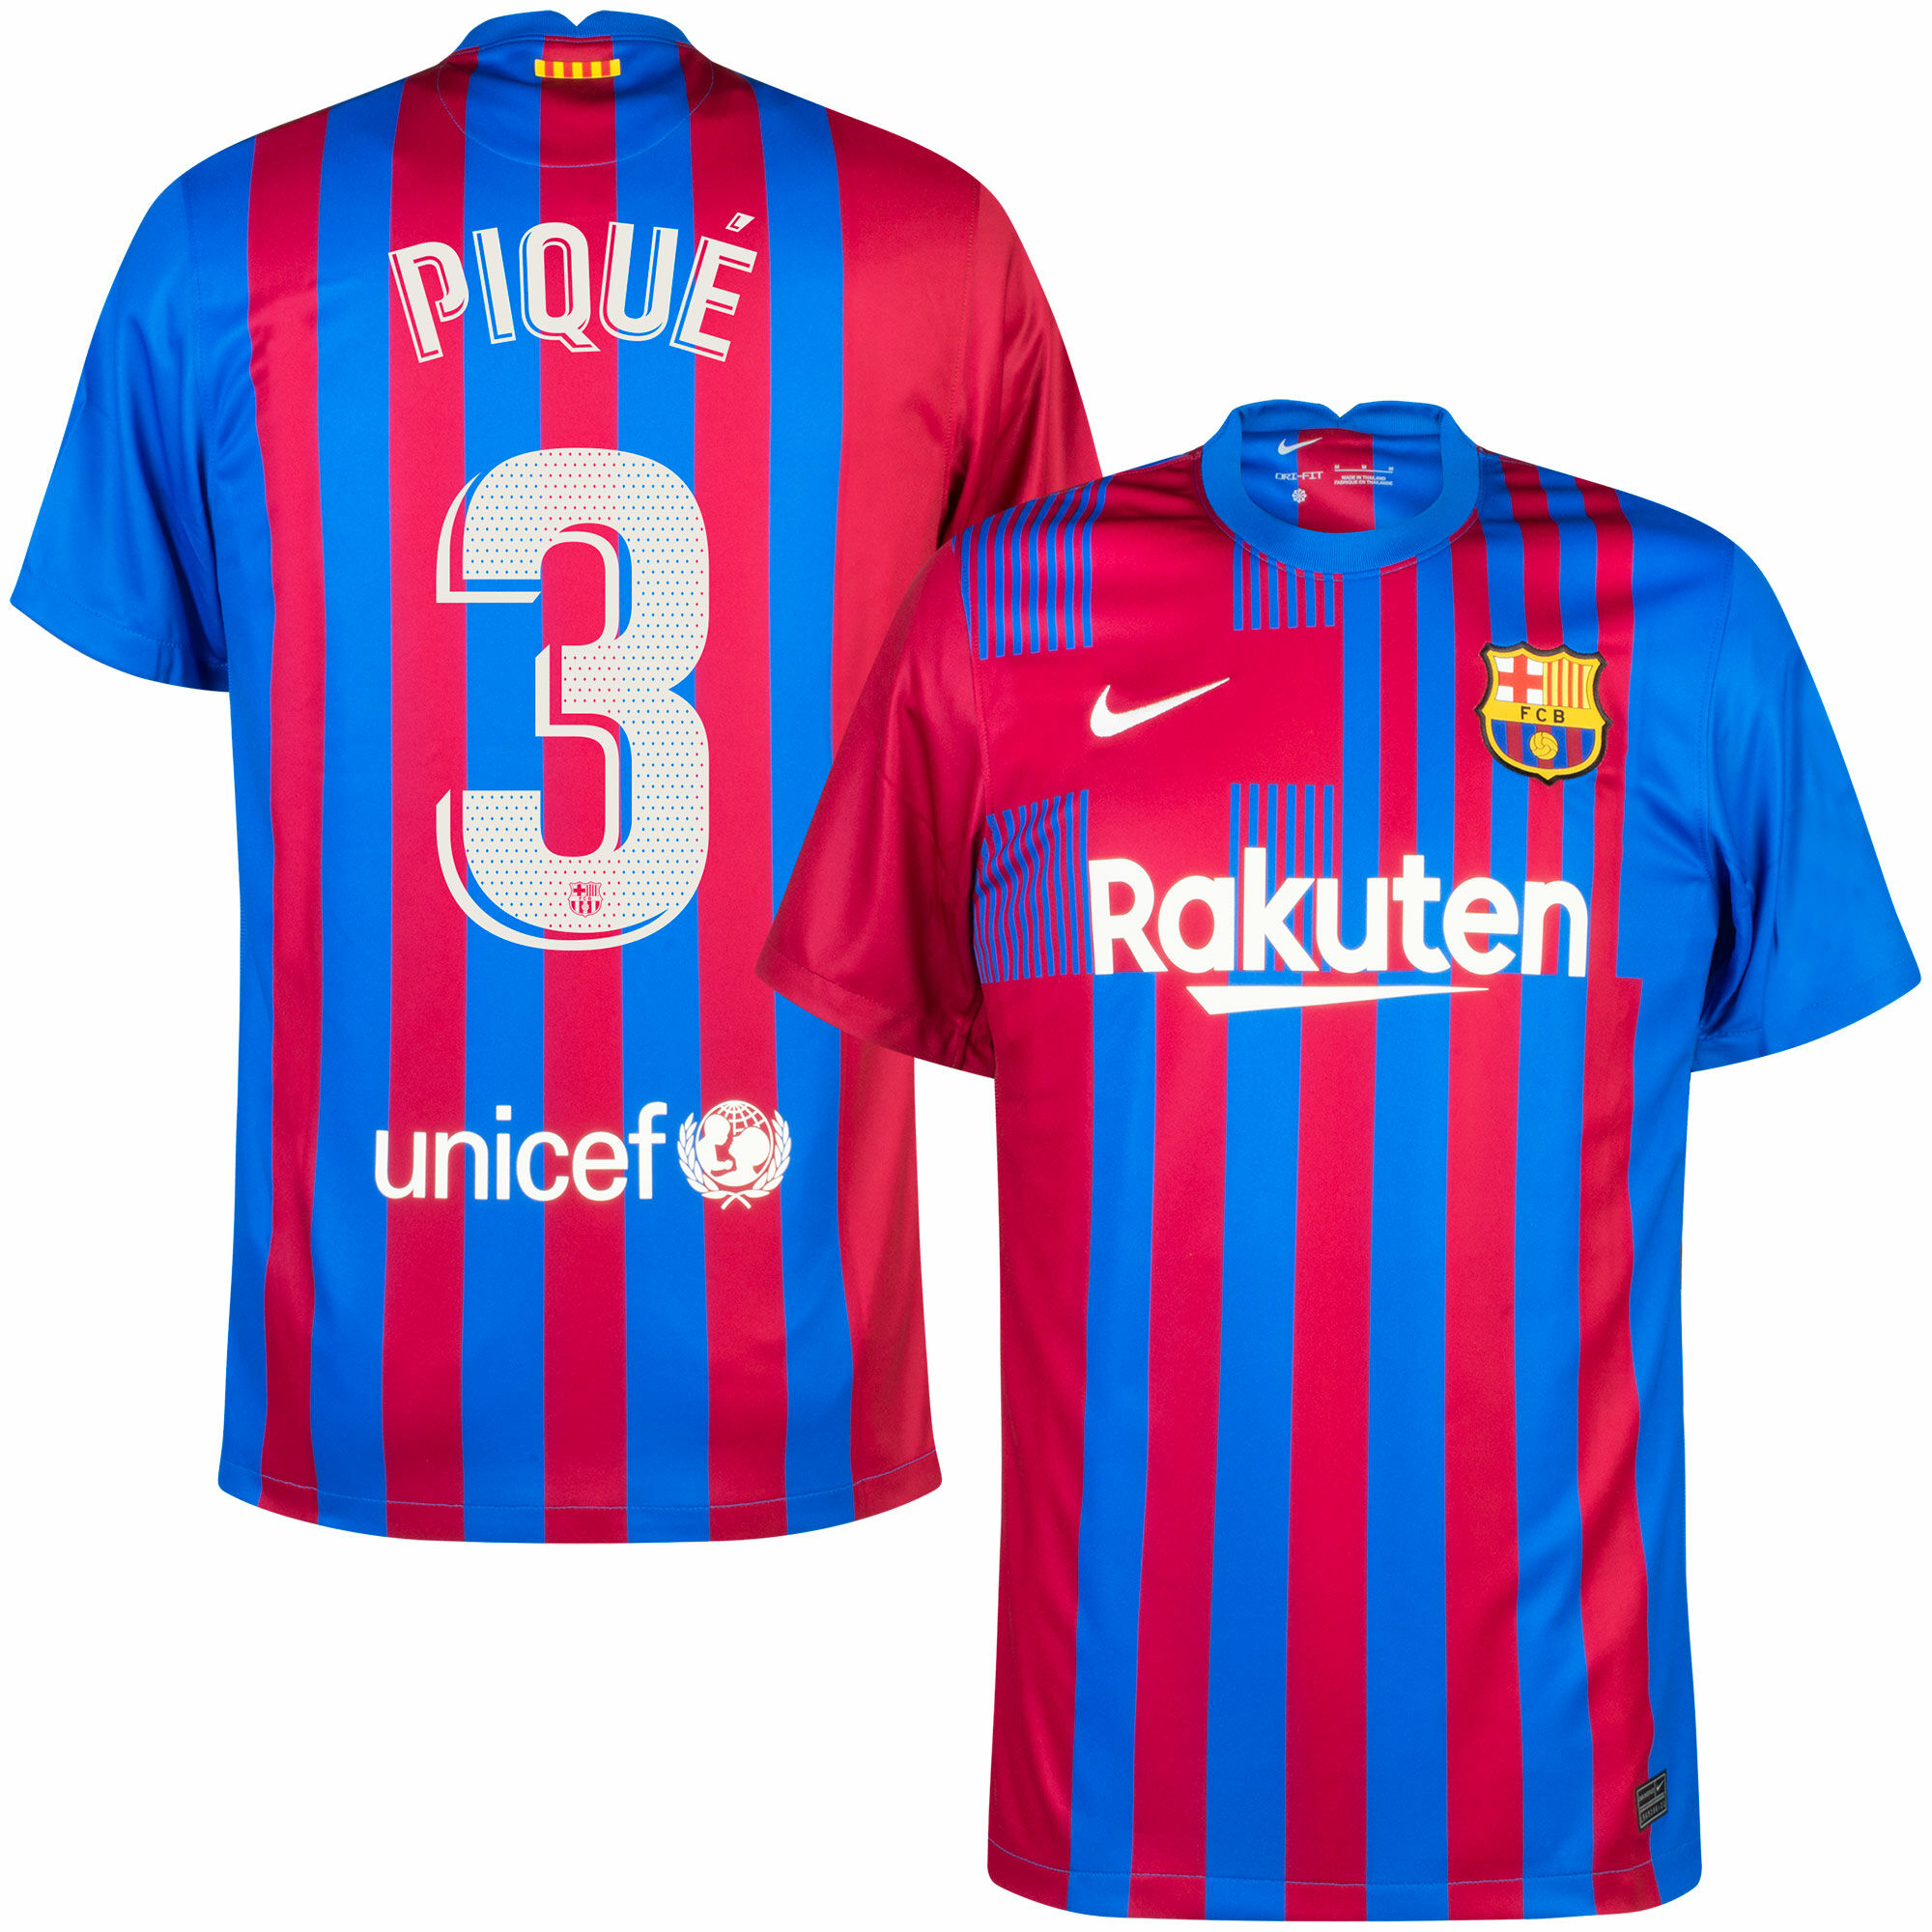 Barcelona - Dres fotbalový - sezóna 2021/22, oficiální potisk, modročervený, domácí, Gerard Piqué, číslo 3